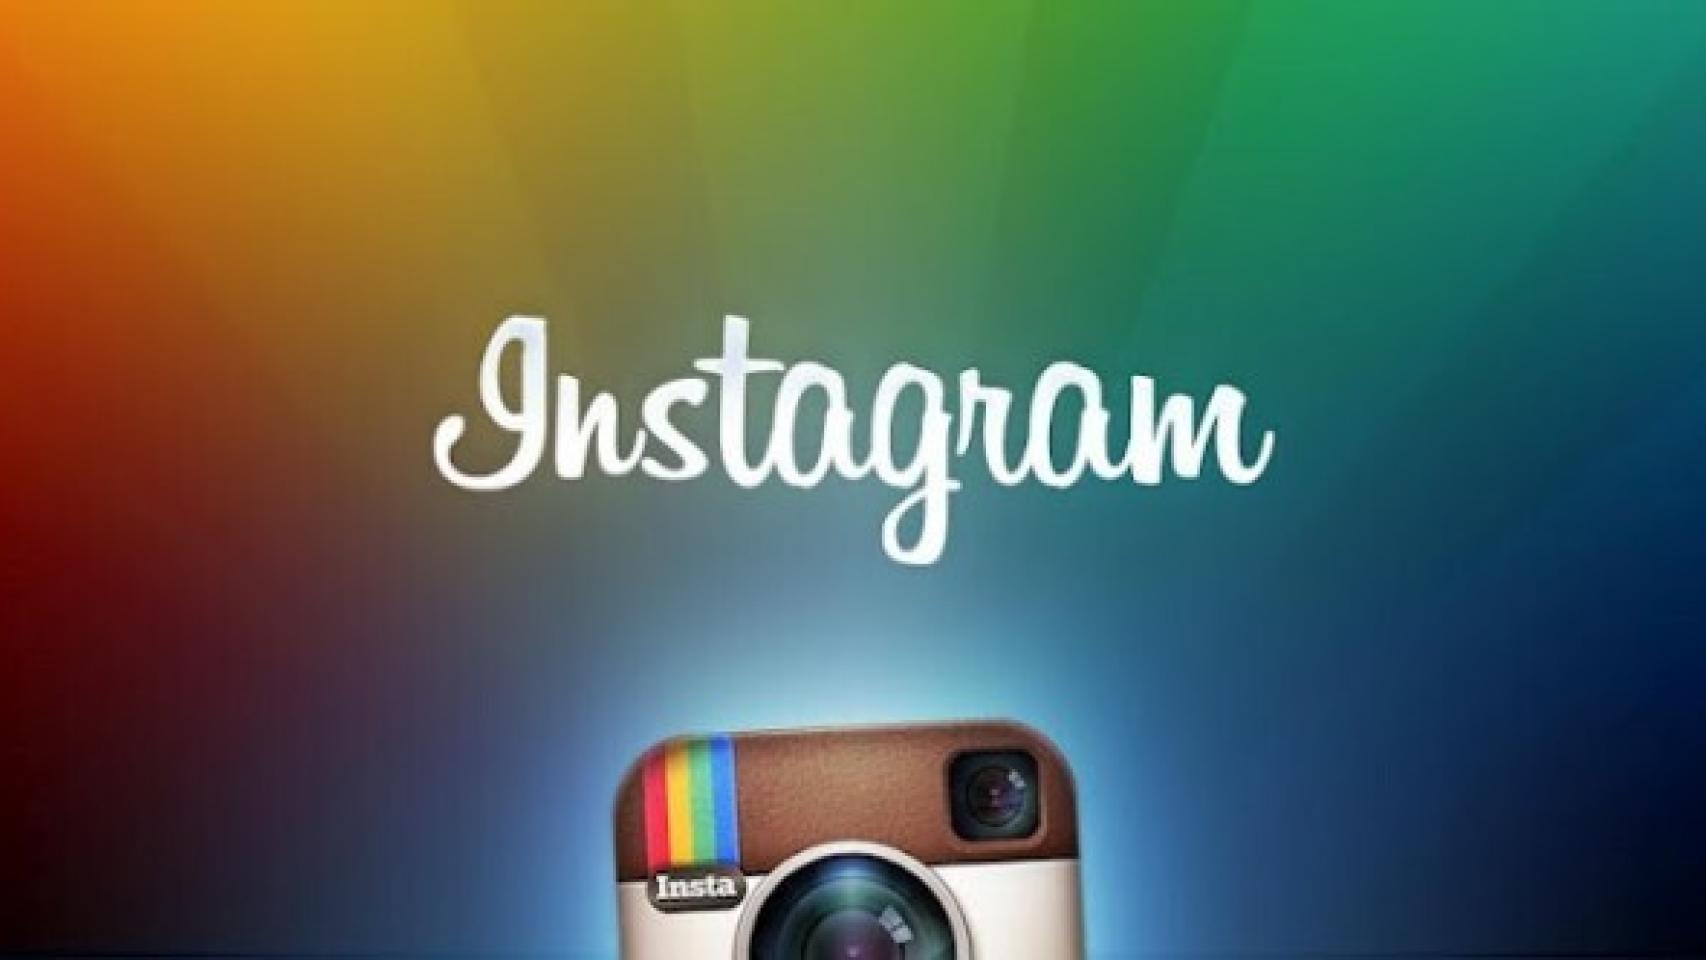 Instagram para Android ya disponible para todos